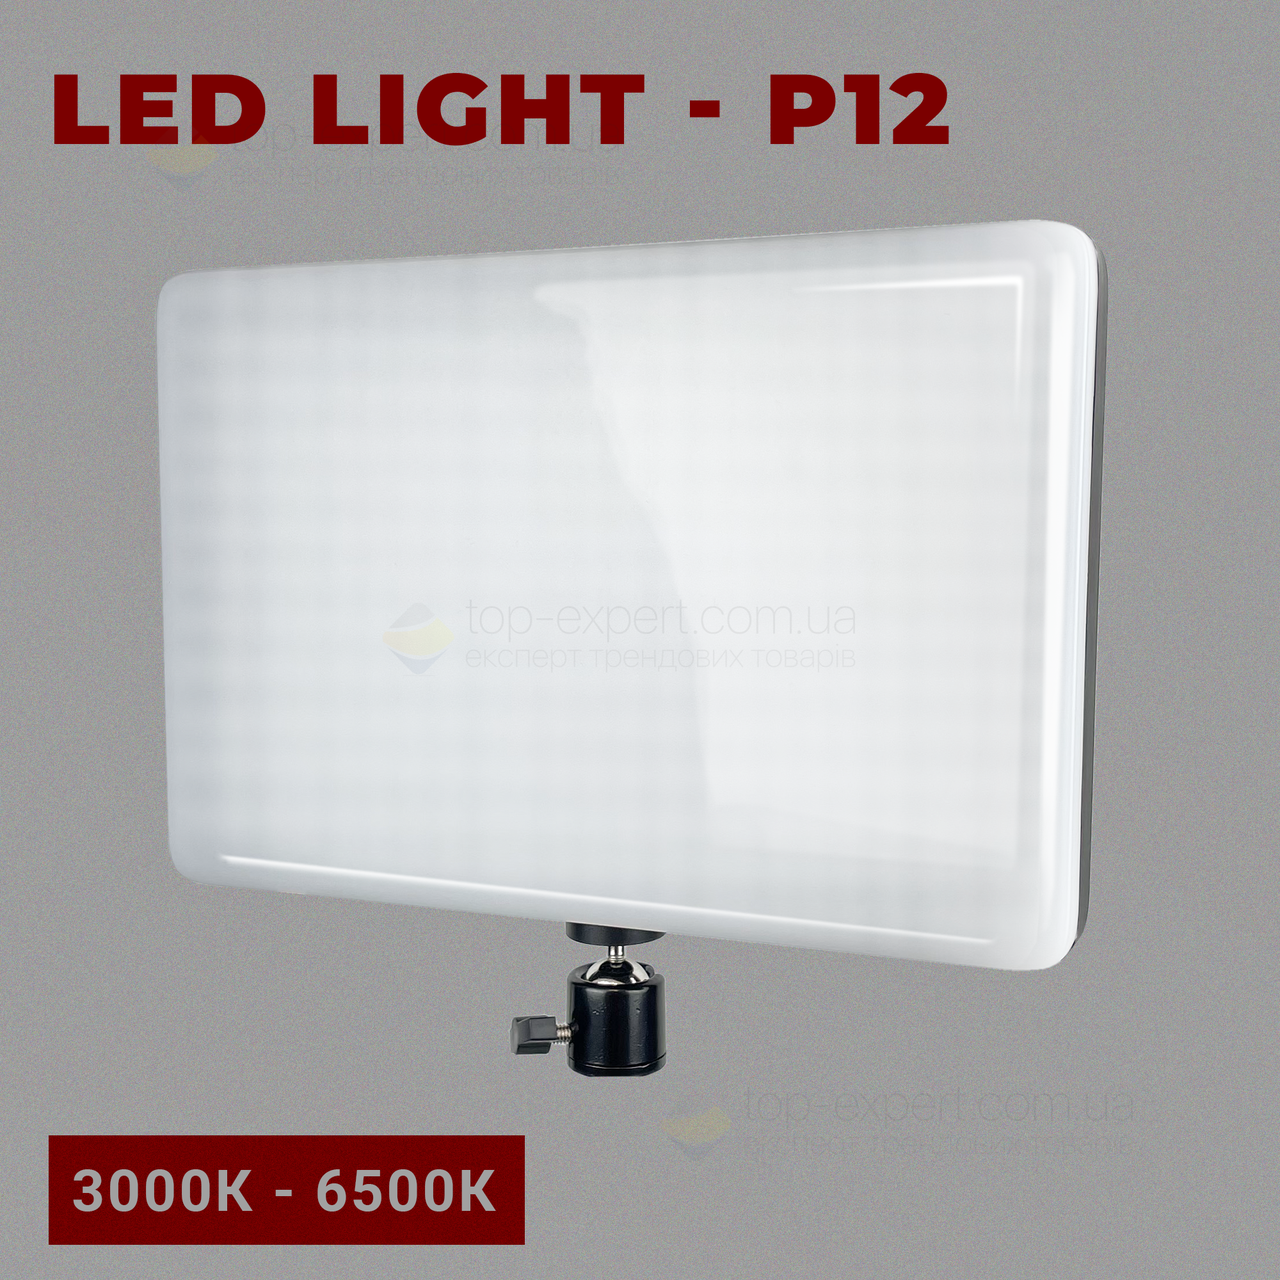 Прямокутна LED лампа P12 відеосвітло 26х18 см зі штативом 2,1 метр лампа для фону. Студійне світло.